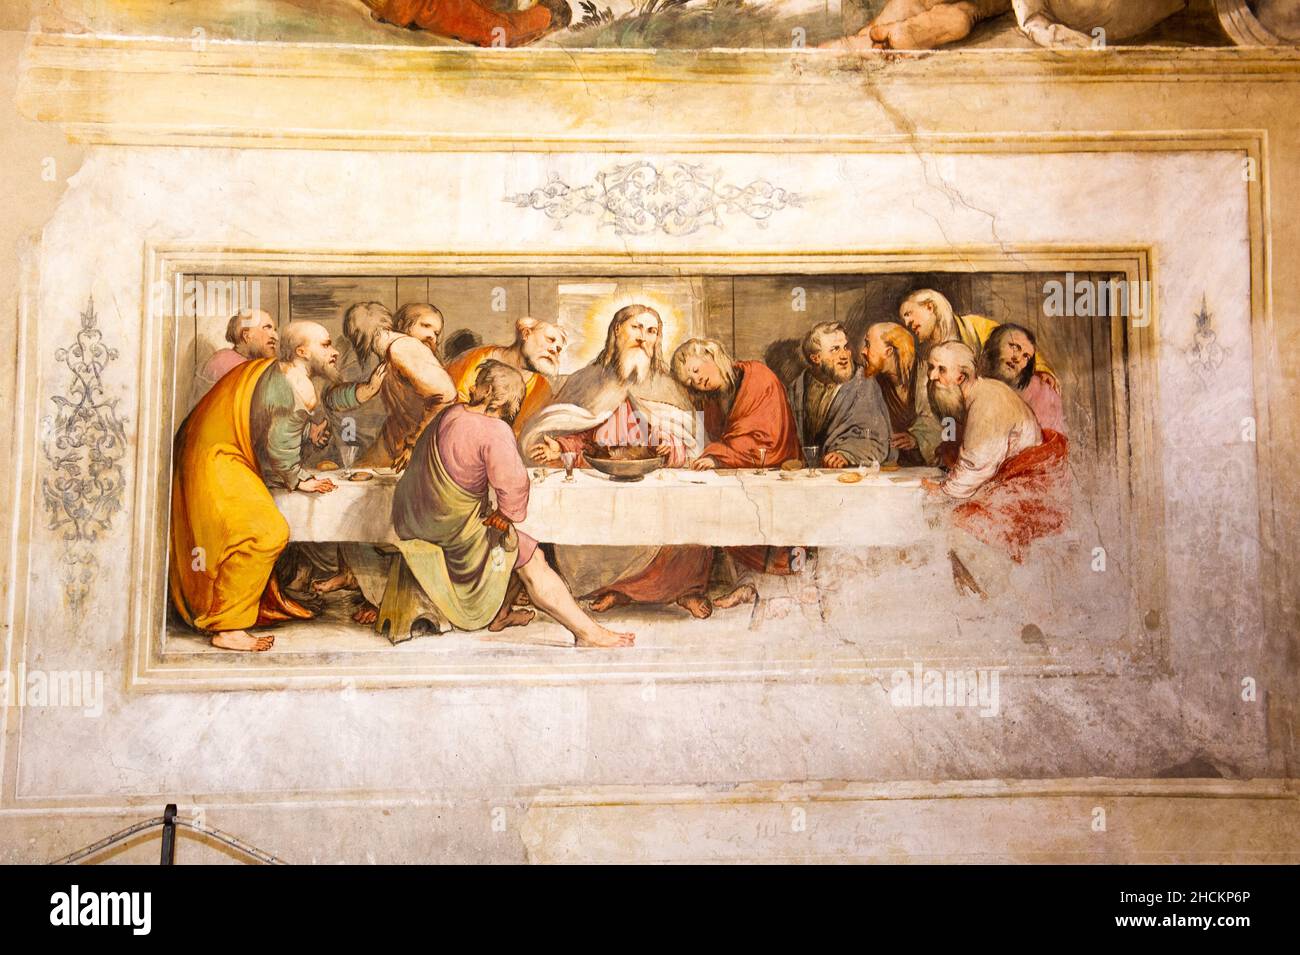 Italia, Lombardia, Lago d'Iseo, Lago di Sebino, Pisogne, Santa Maria della neve, affreschi di Girolamo Romani dice Romanino nel 1534 Foto Stock